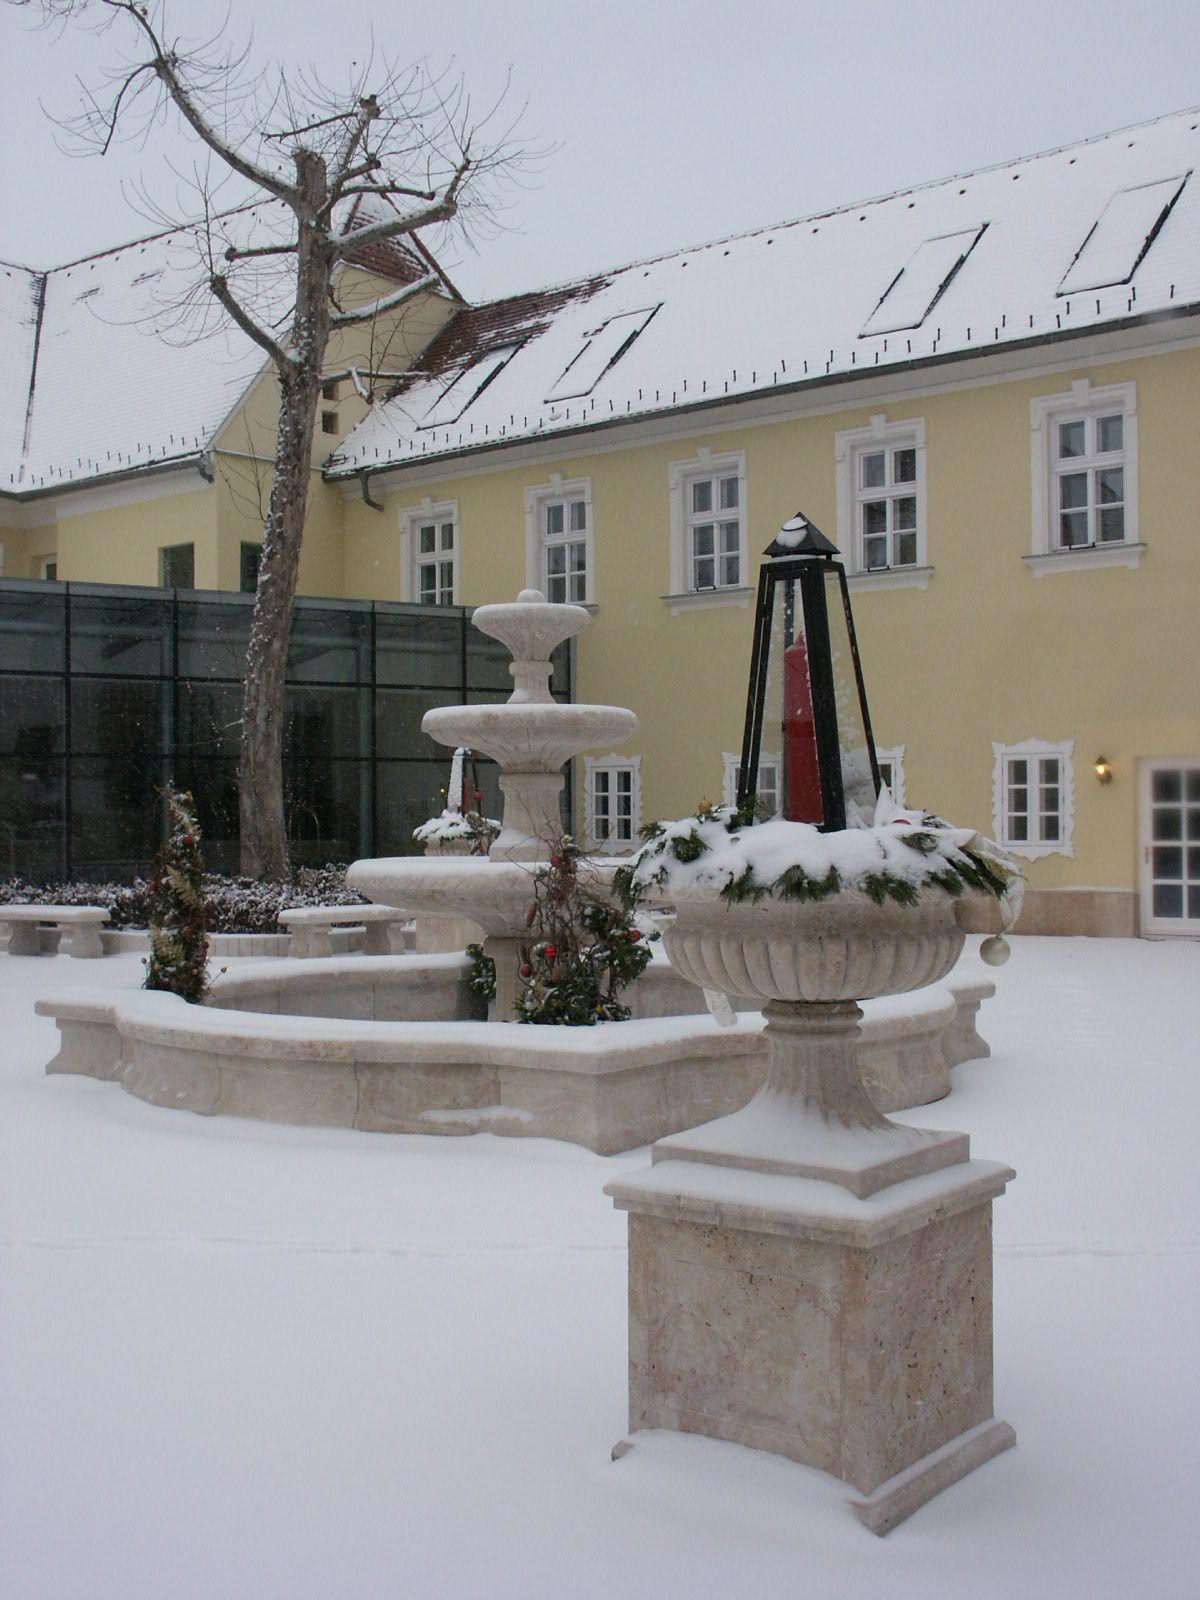 欧洲匈牙利国家艺术中心